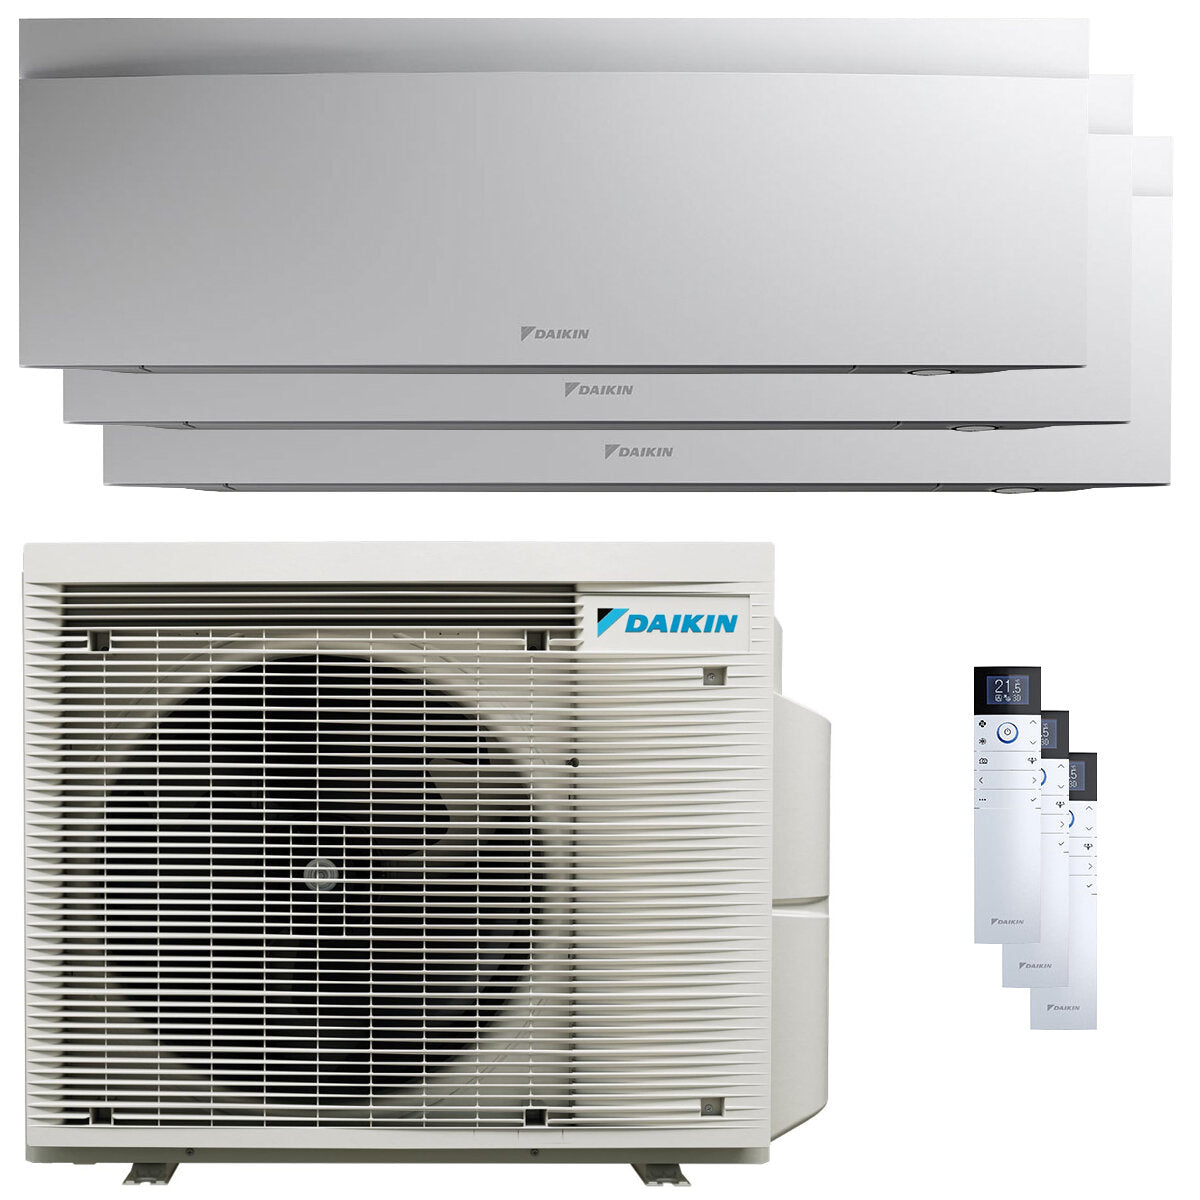 Daikin Emura 3 trial split air conditioner 7000+9000+9000 BTU inverter A++ wifi outdoor unit 4 kW White